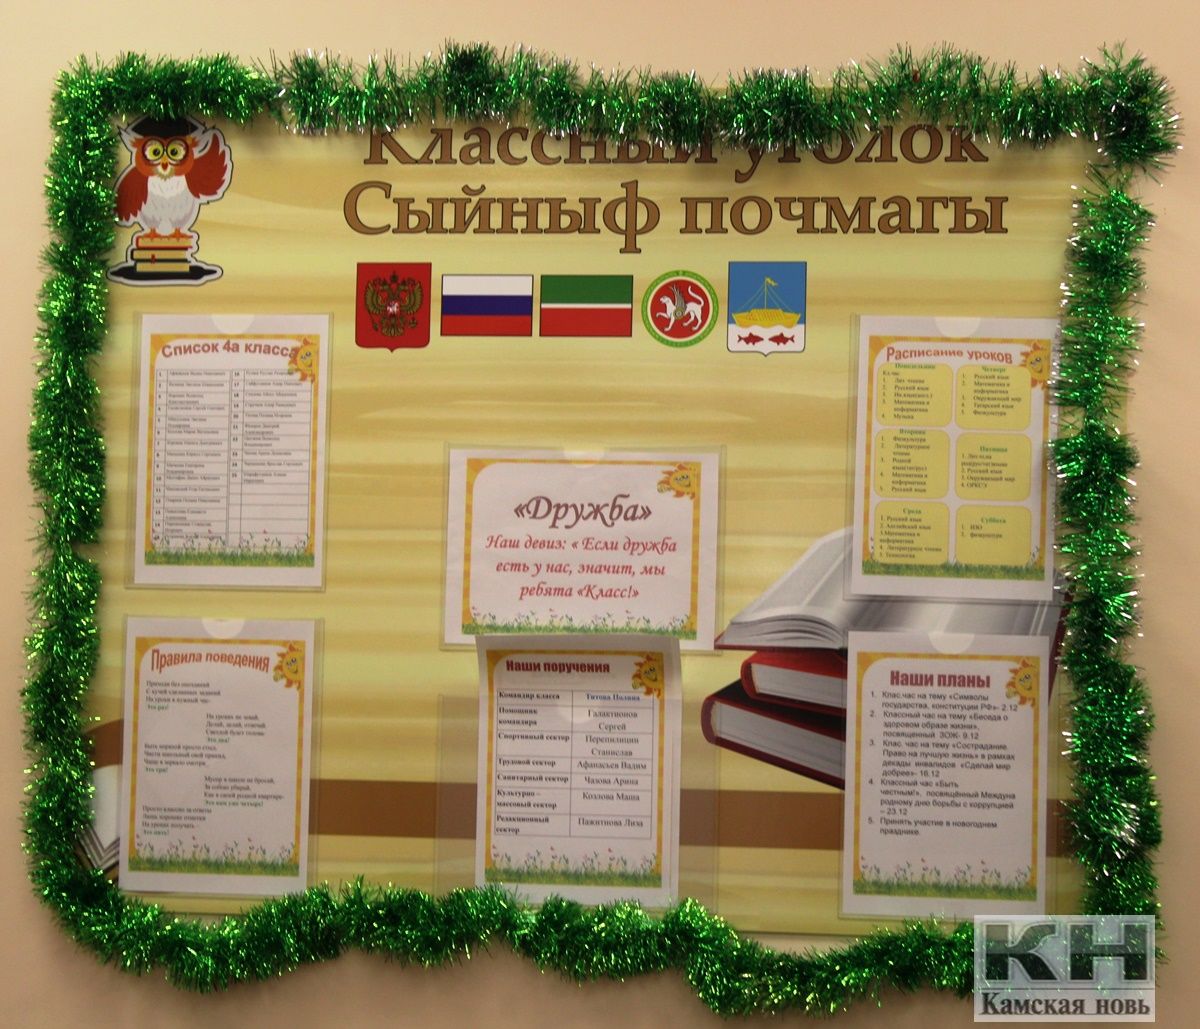 ЛСОШ №2 провела конкурс на новогоднее оформление кабинетов